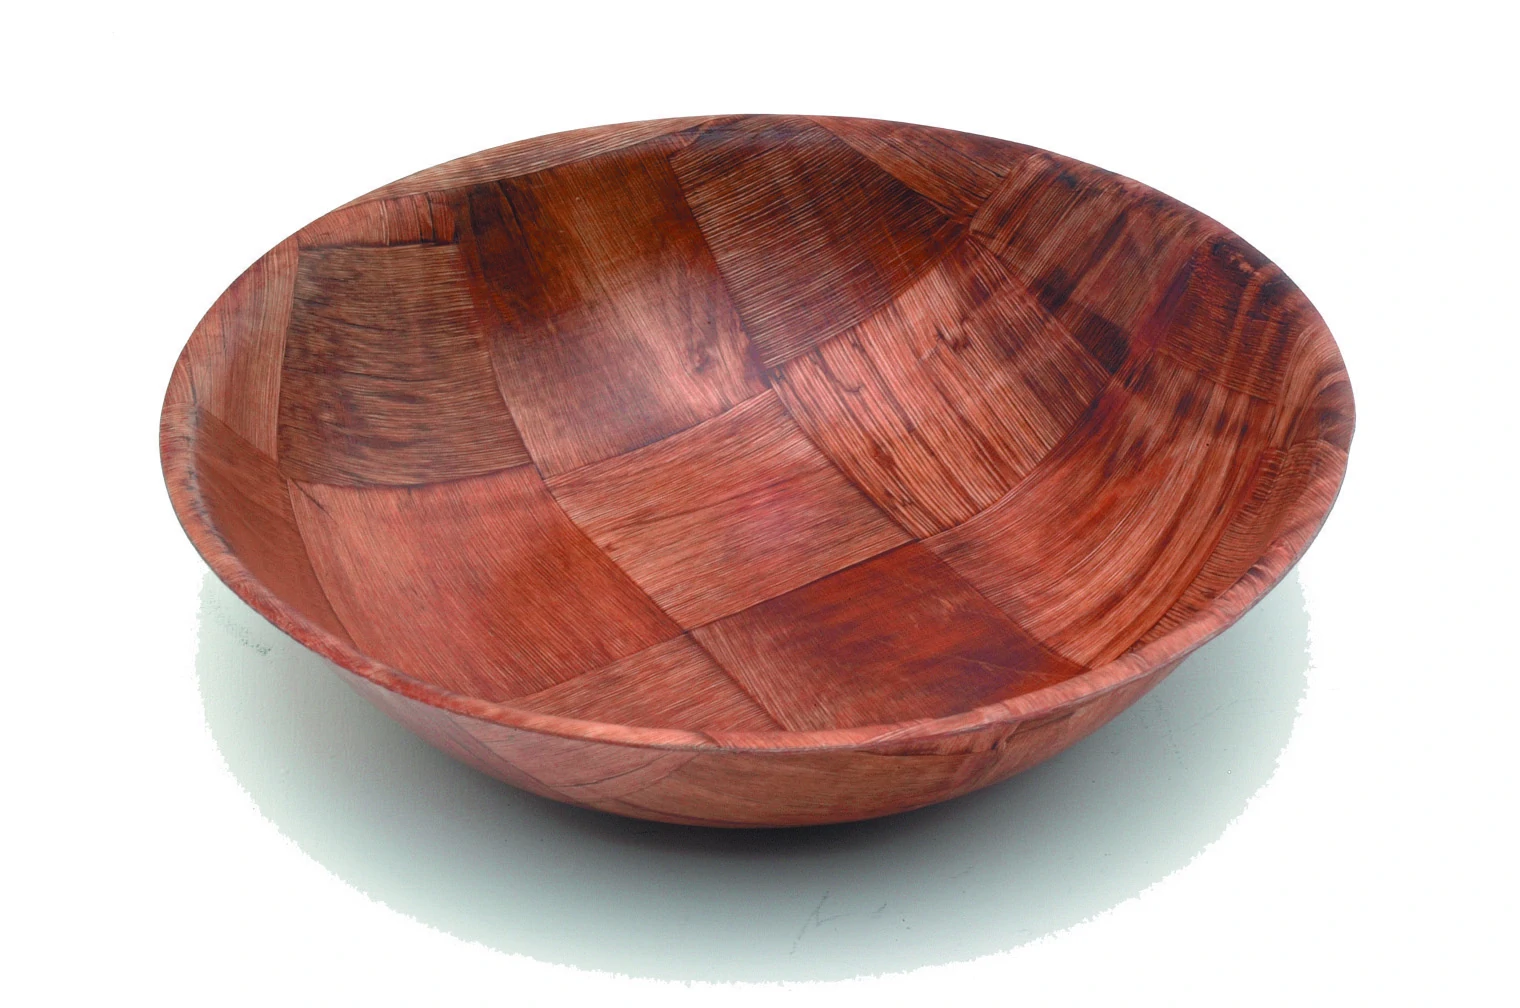 Woven Wood Bowls 6" Dia